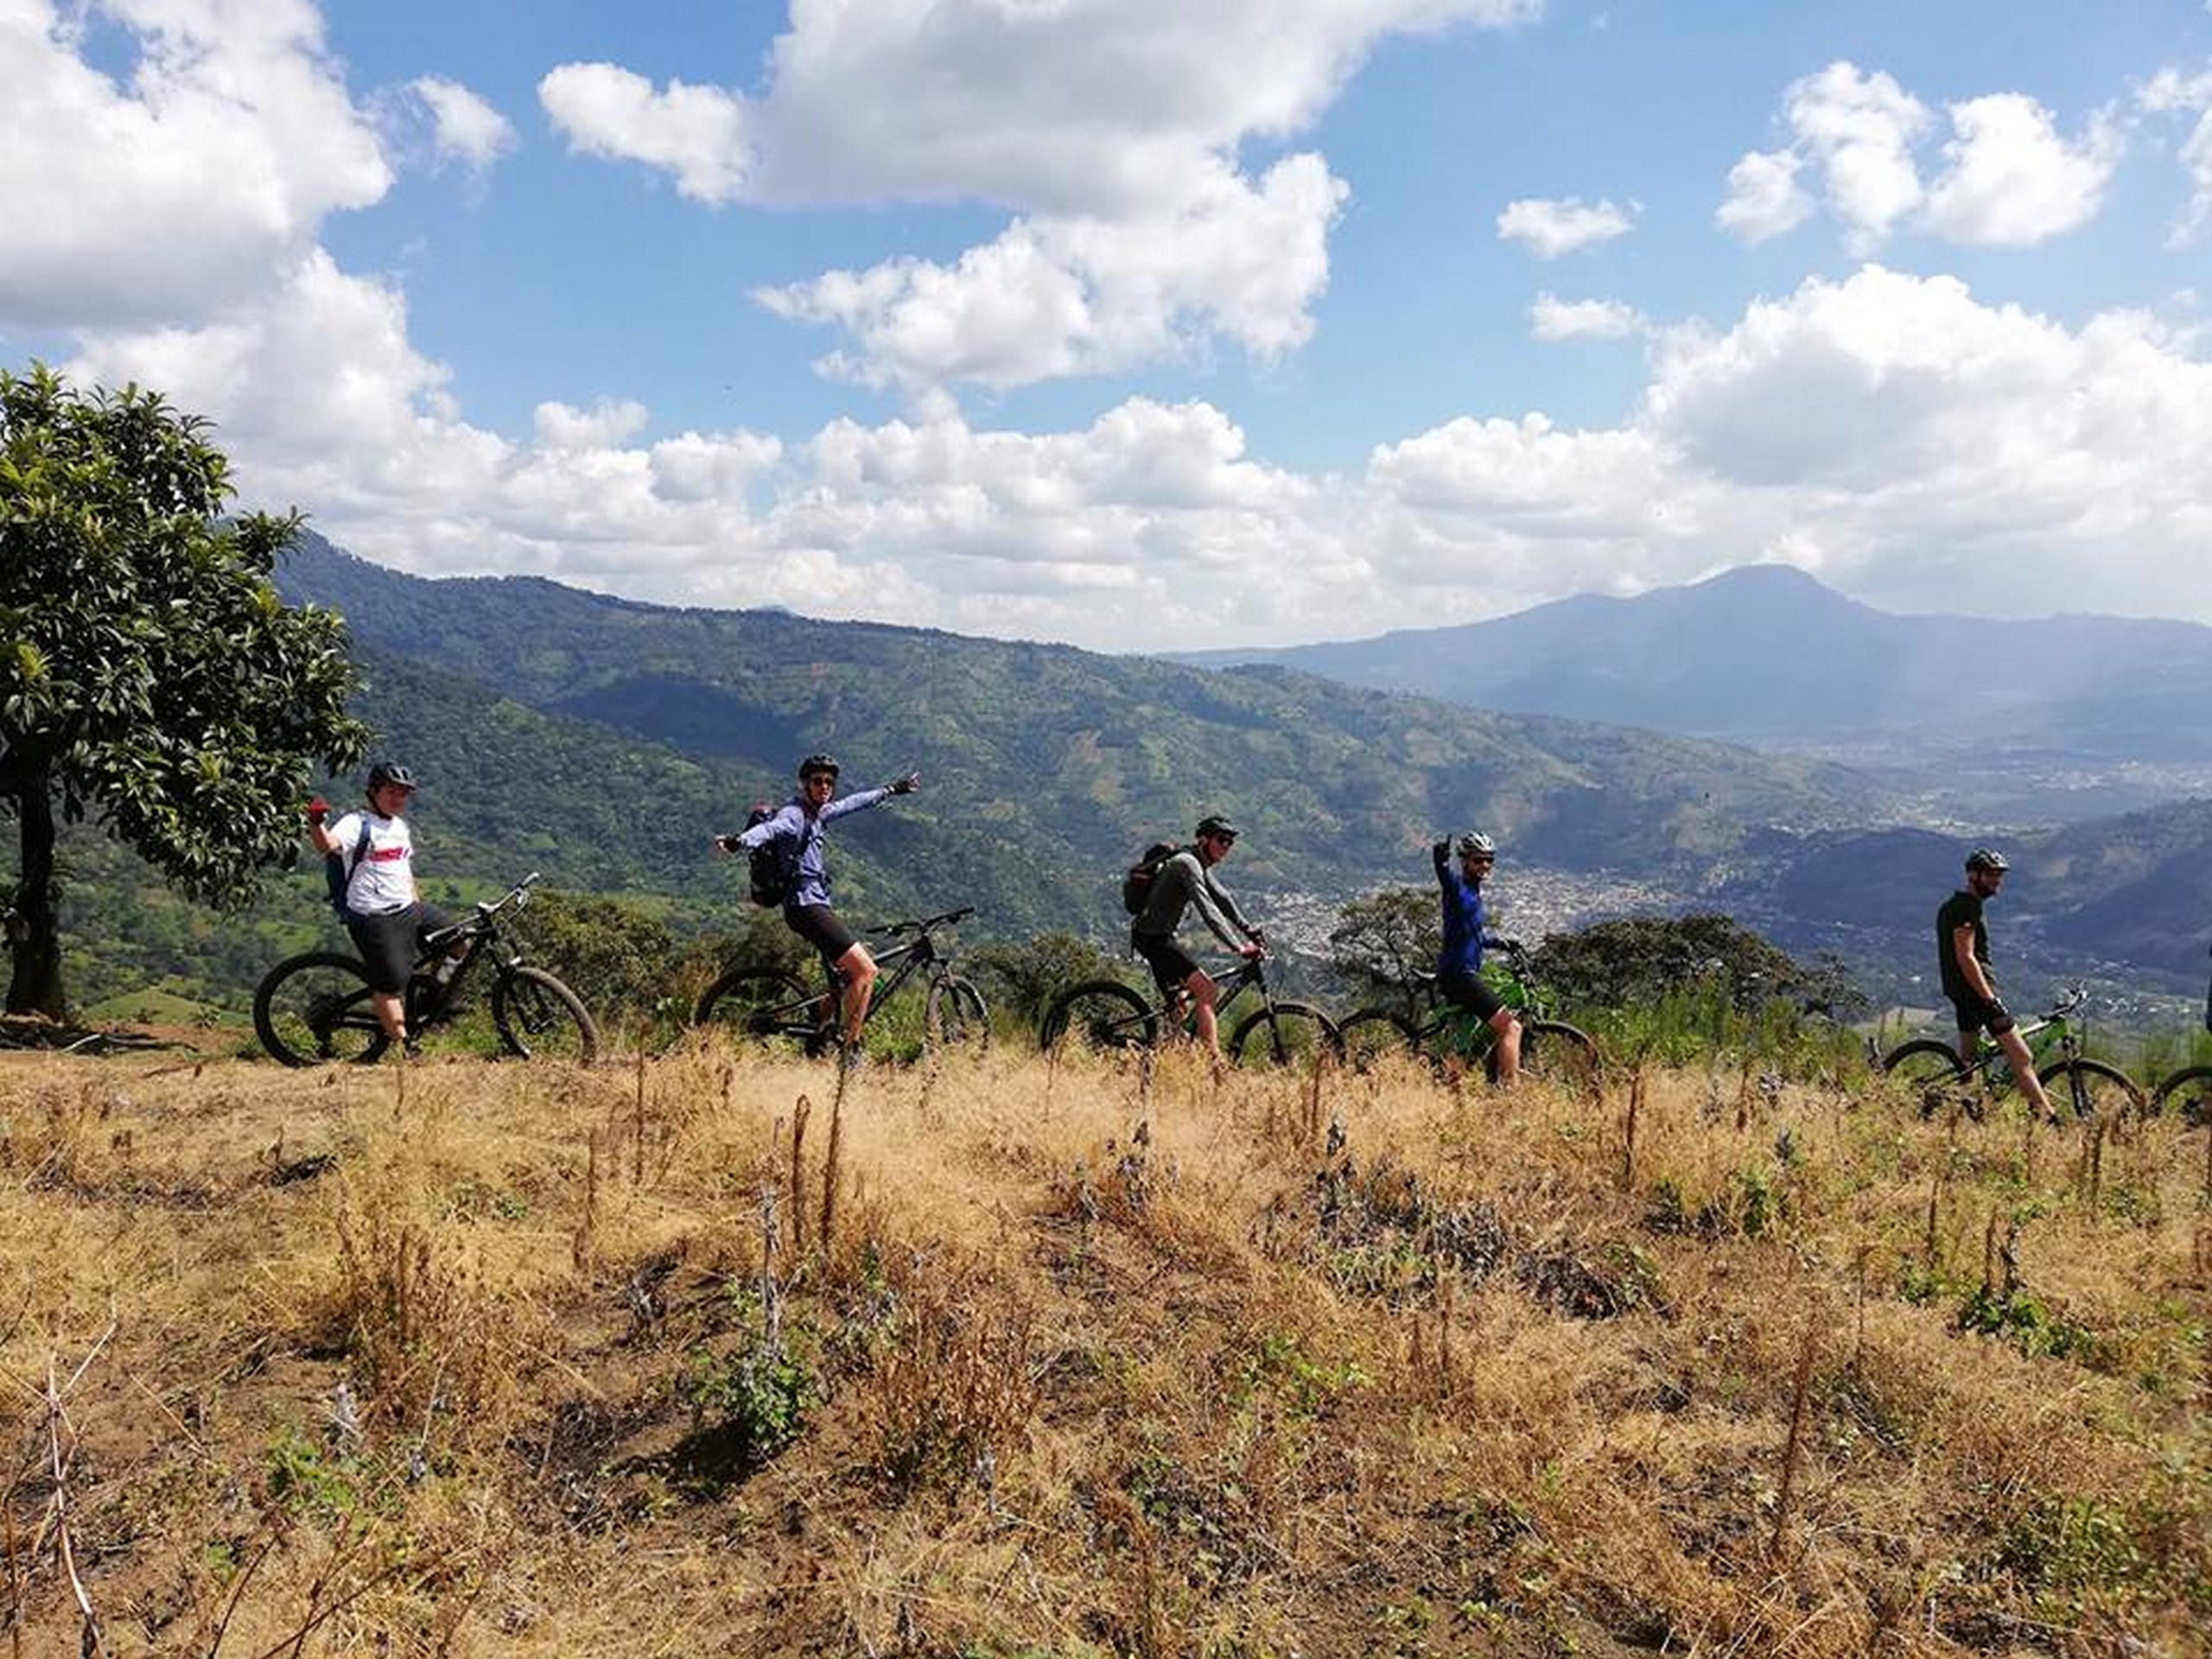 Group biking on the ridge in Guatemala